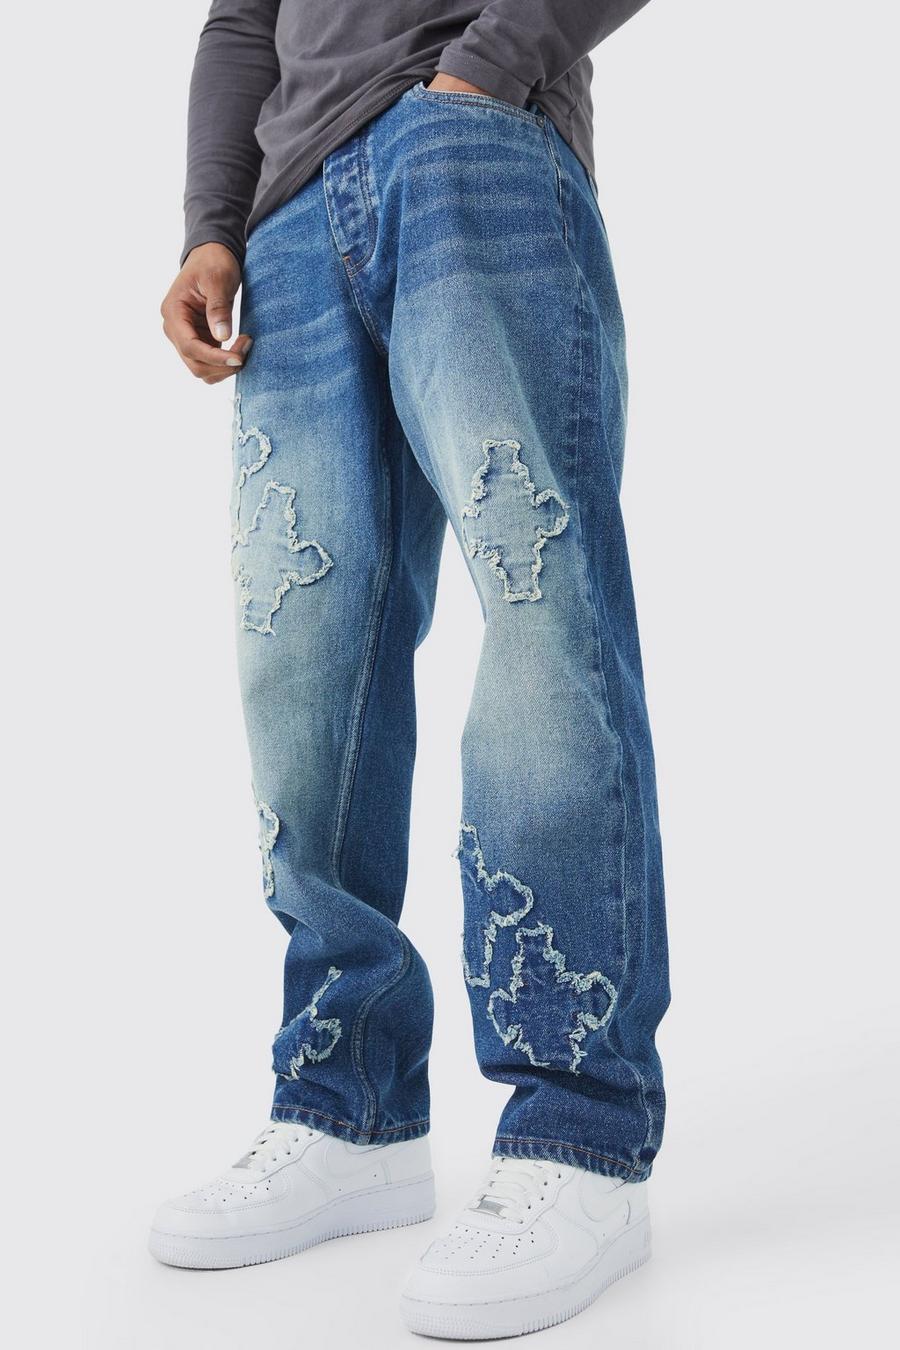 Jeans rilassati con applique incrociate e fondo grezzo, Antique wash